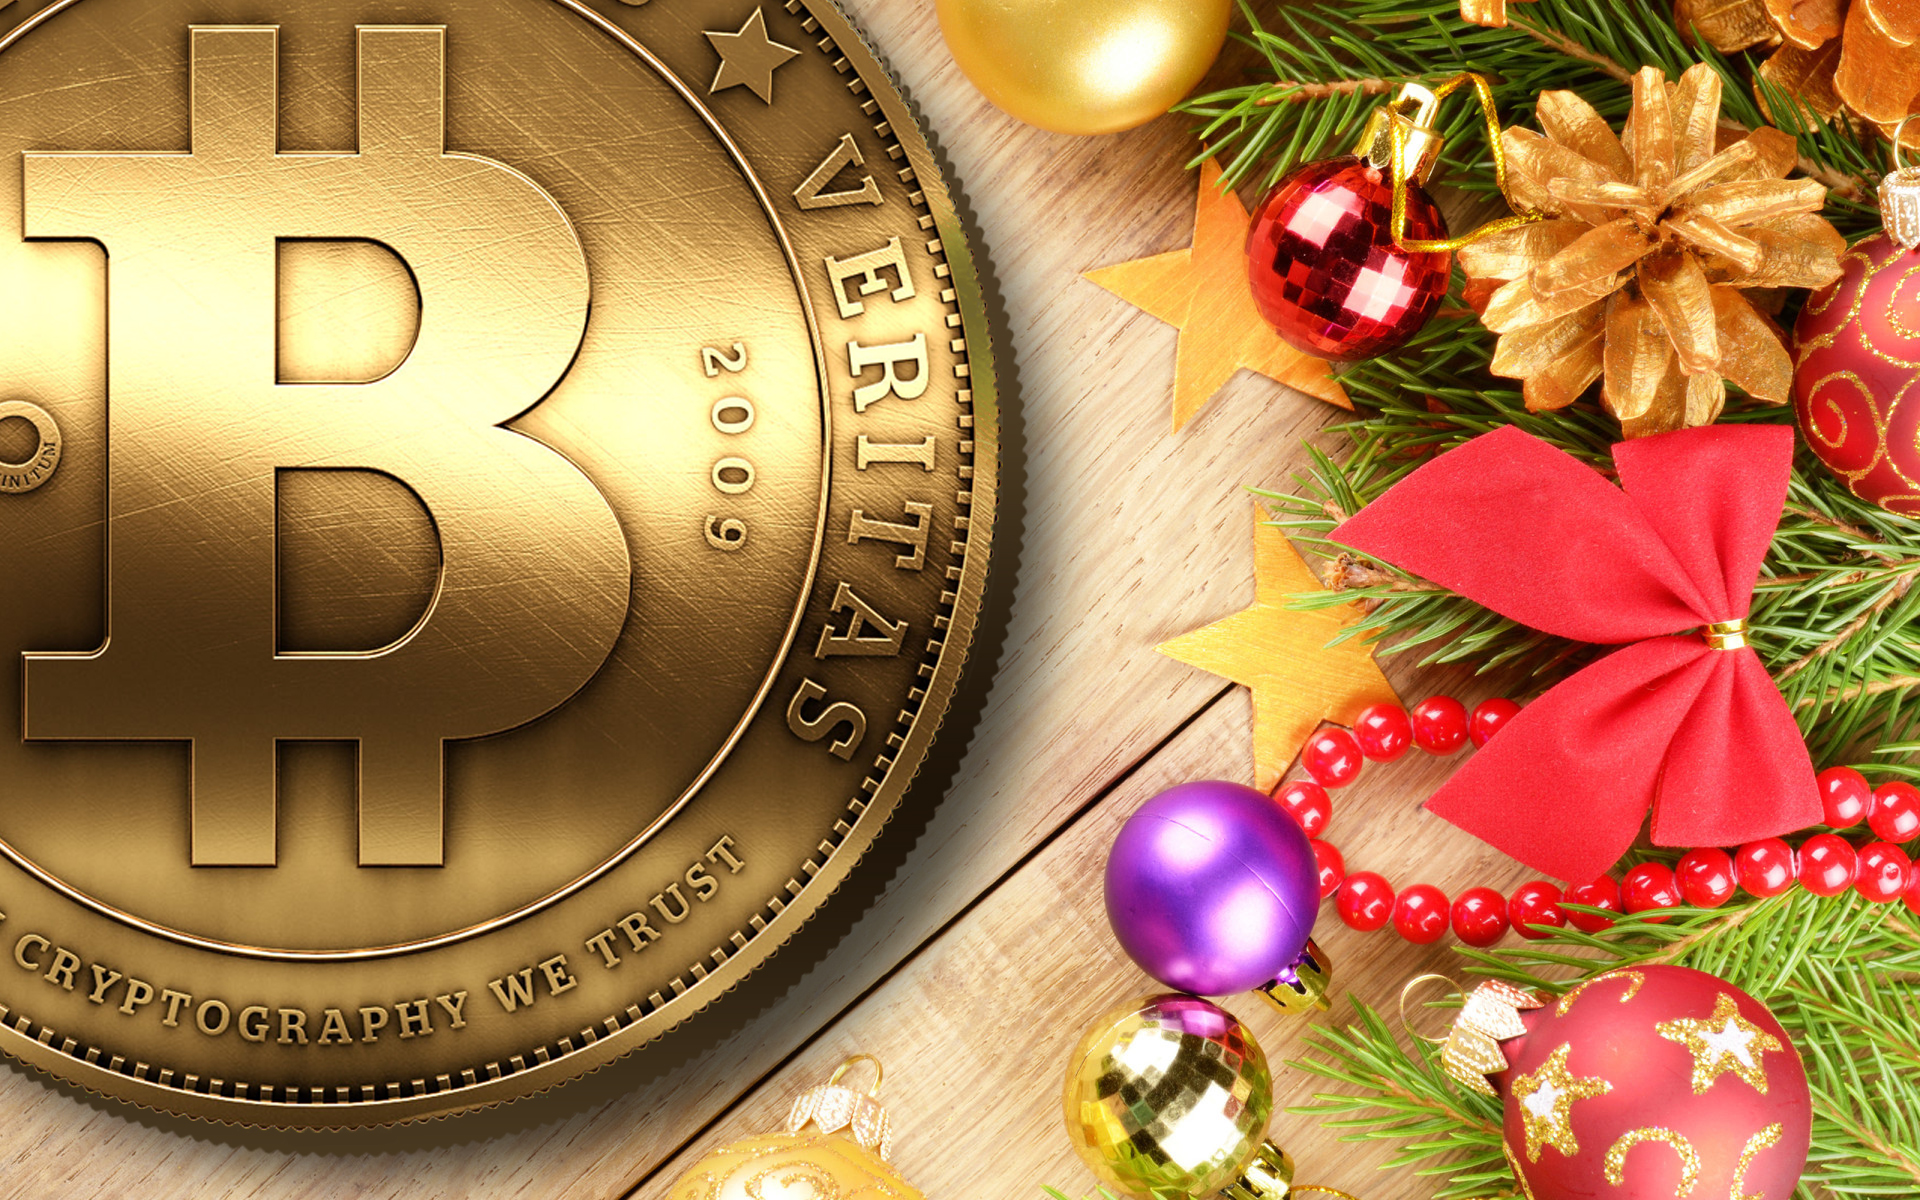 bitcoin christmas